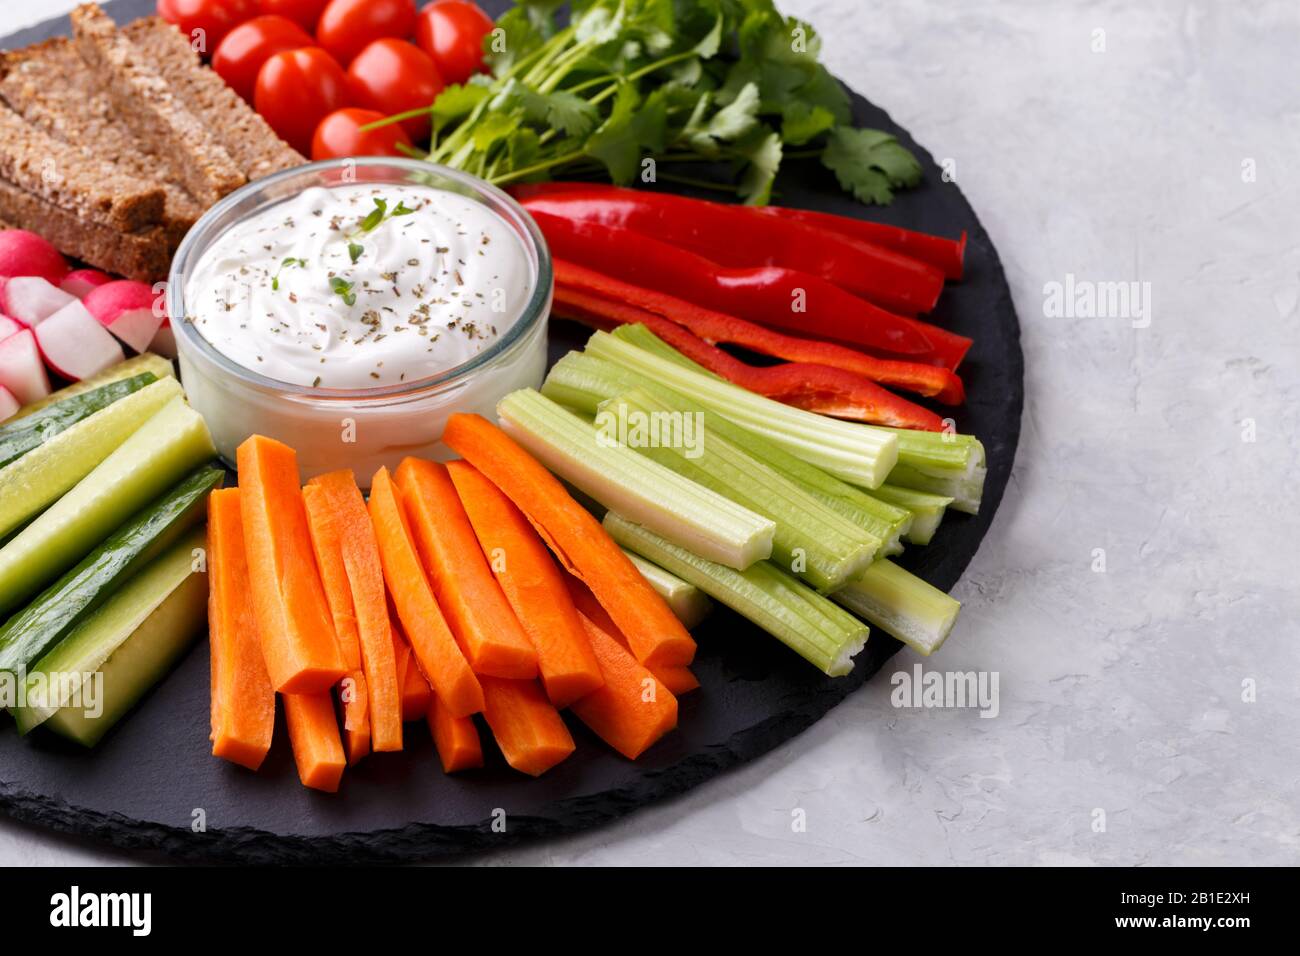 En-cas de légumes sains avec sauce au yaourt sur une planche ronde en pierre d'ardoise, vue de dessus rapprochée, espace de copie Banque D'Images